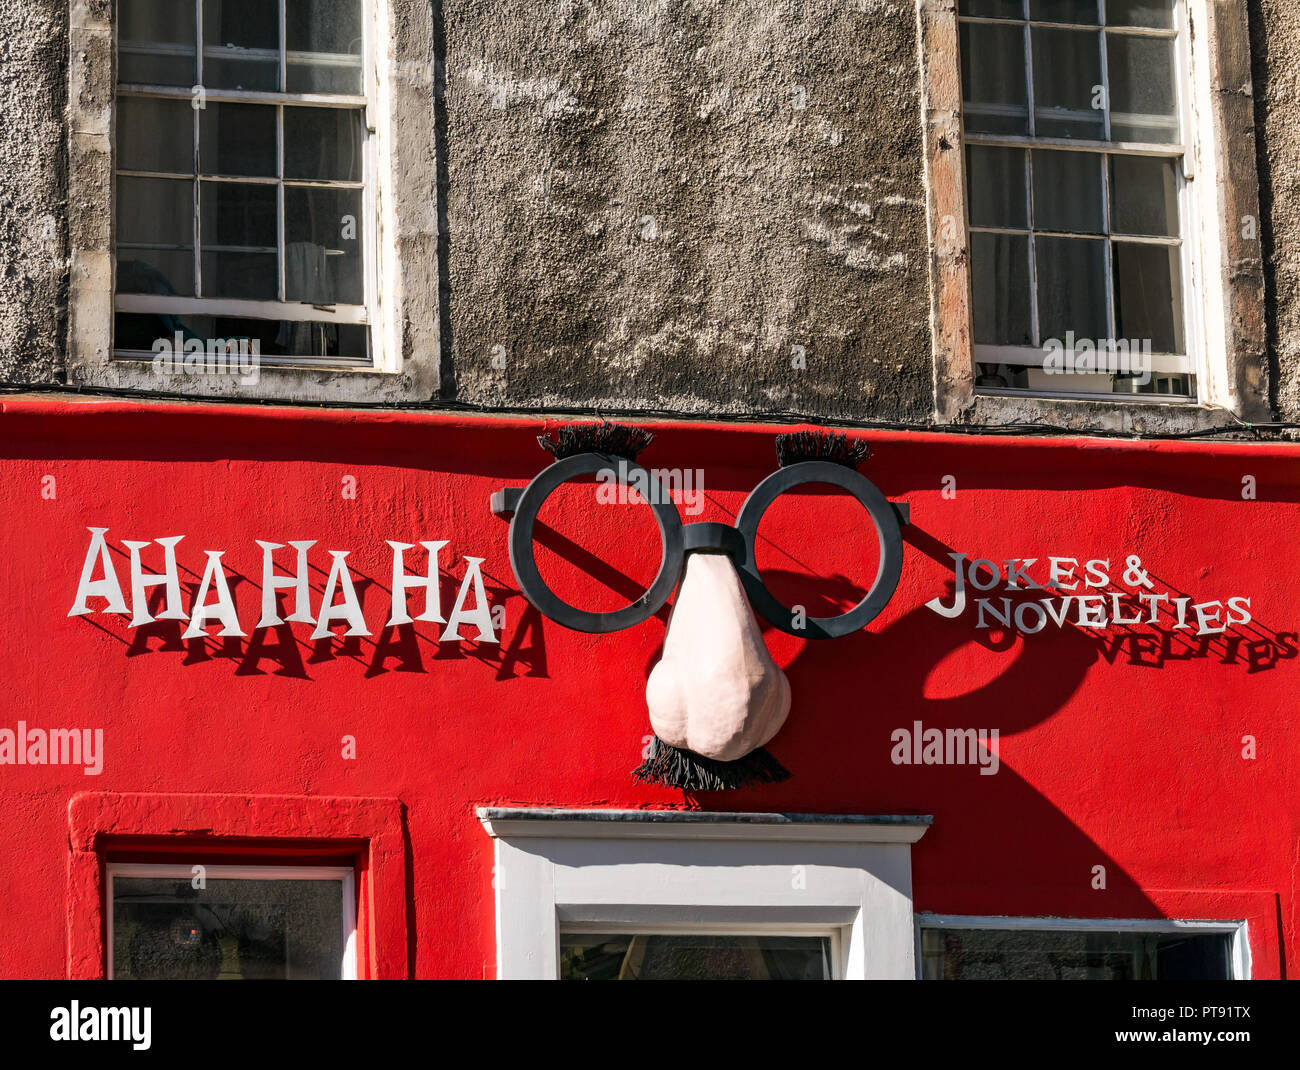 Front von Witz und Neuheit Laden namens Aha ha ha mit lustigen große Nase und Brille, West Bogen, Edinburgh, Schottland, Großbritannien Stockfoto